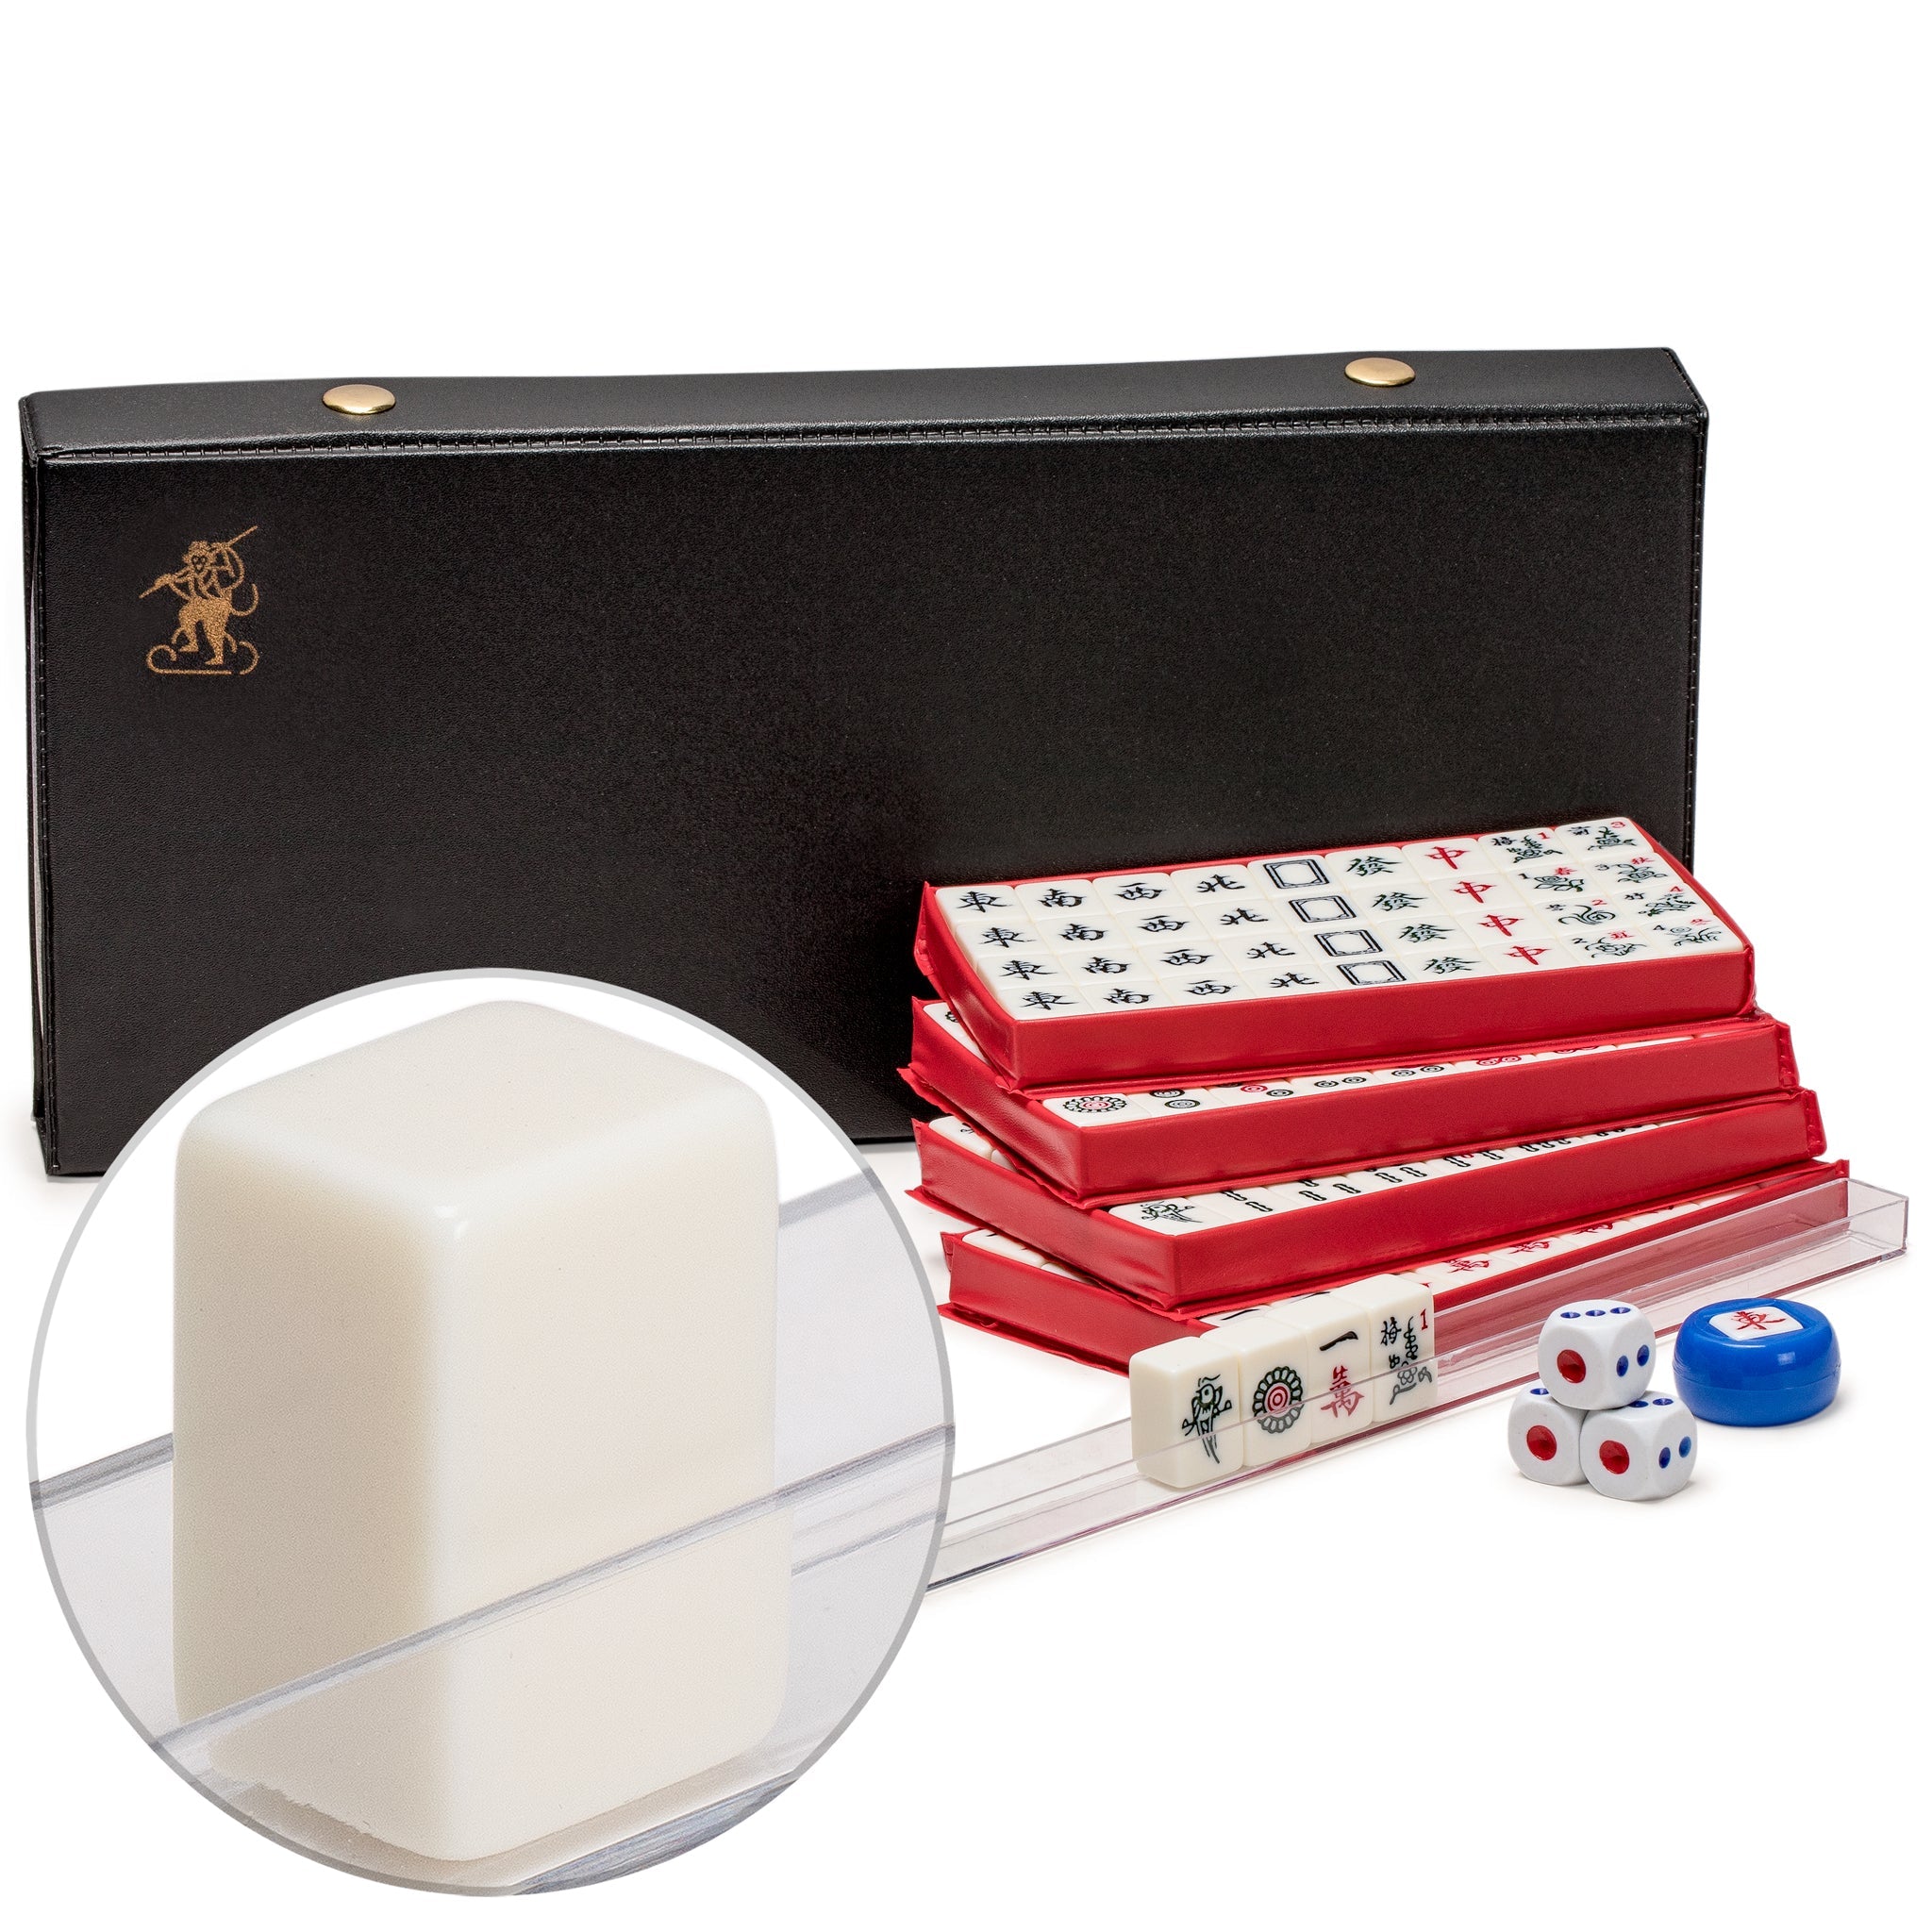  Mahjong Sets Chinese Chinese Mahjong Game Set with 146